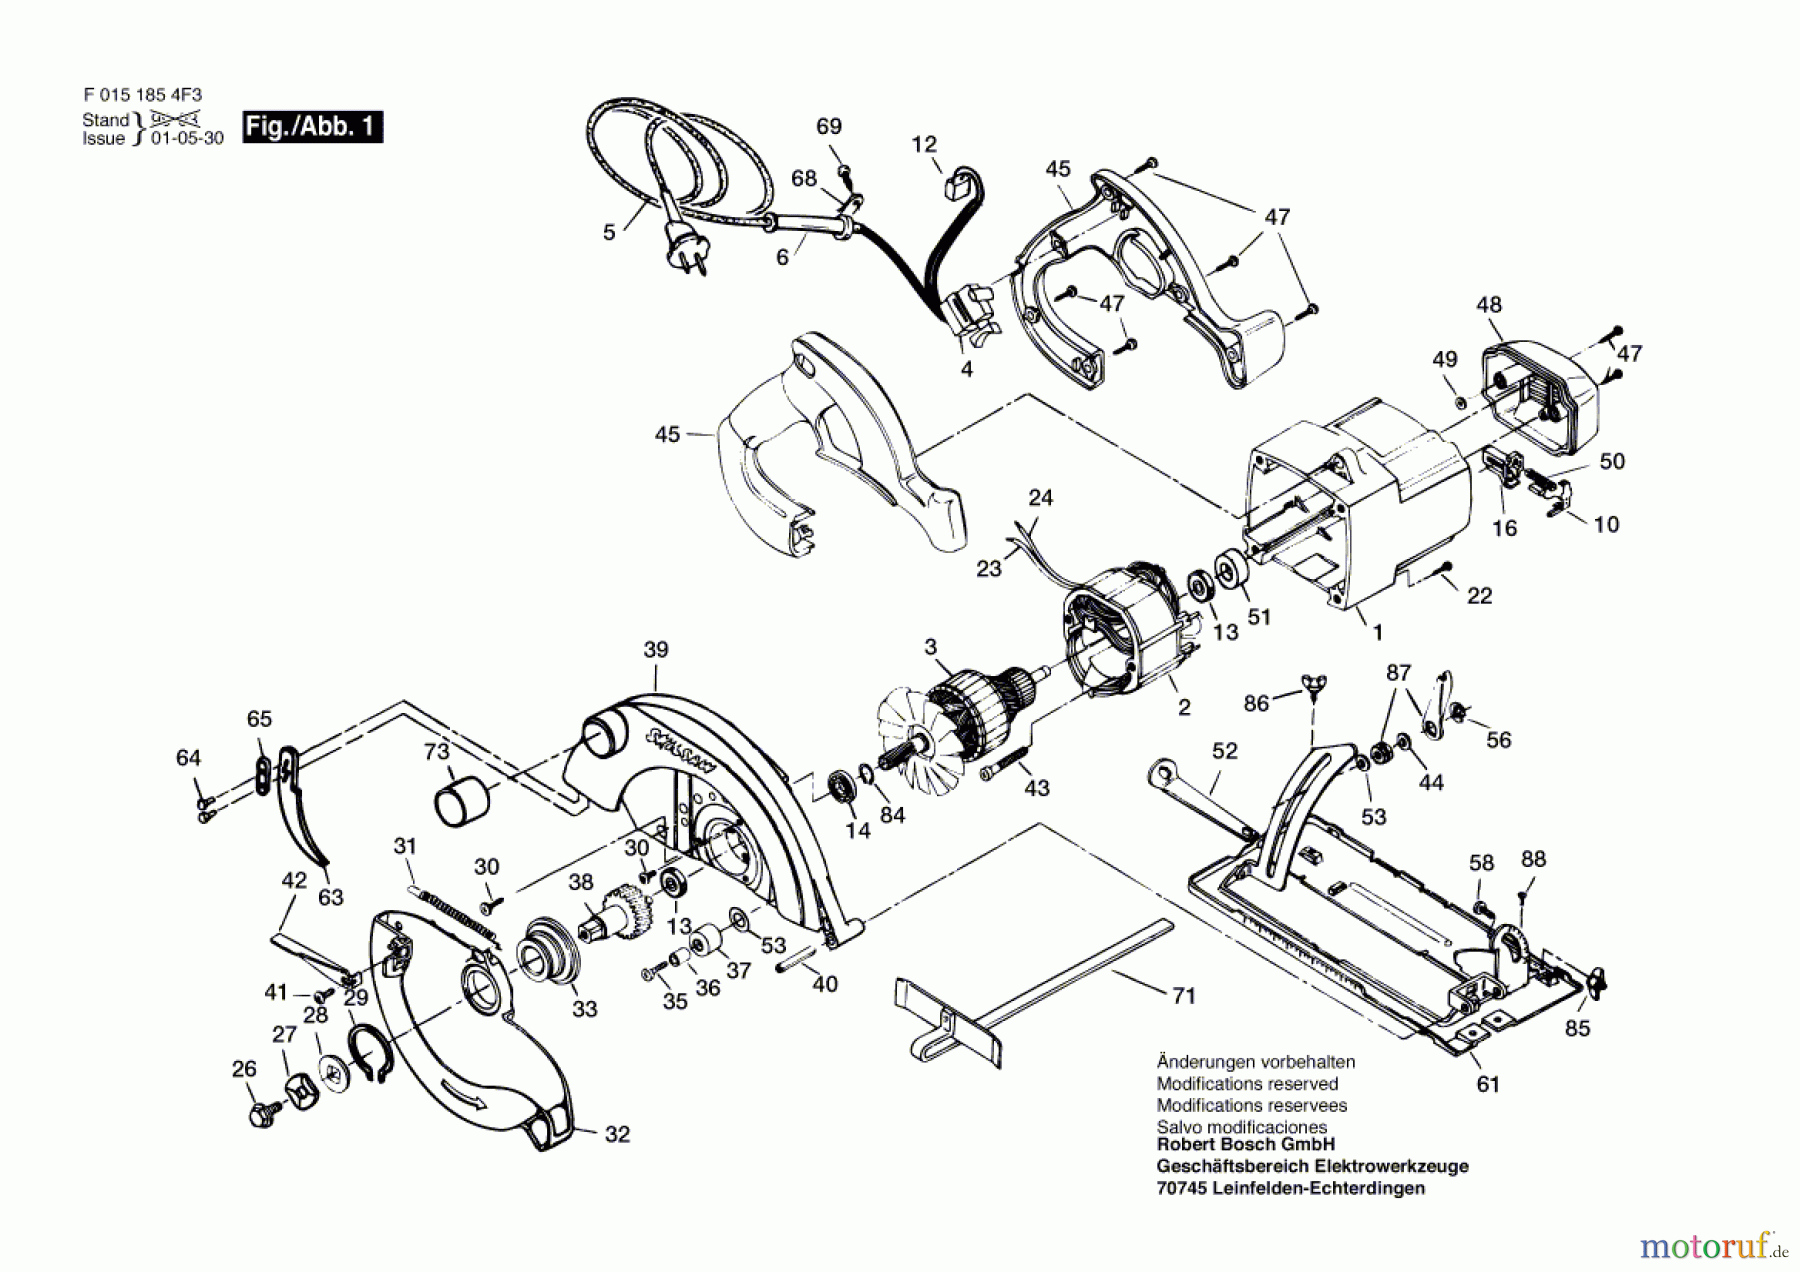  Bosch Werkzeug Kreissäge 1854U3 Seite 1